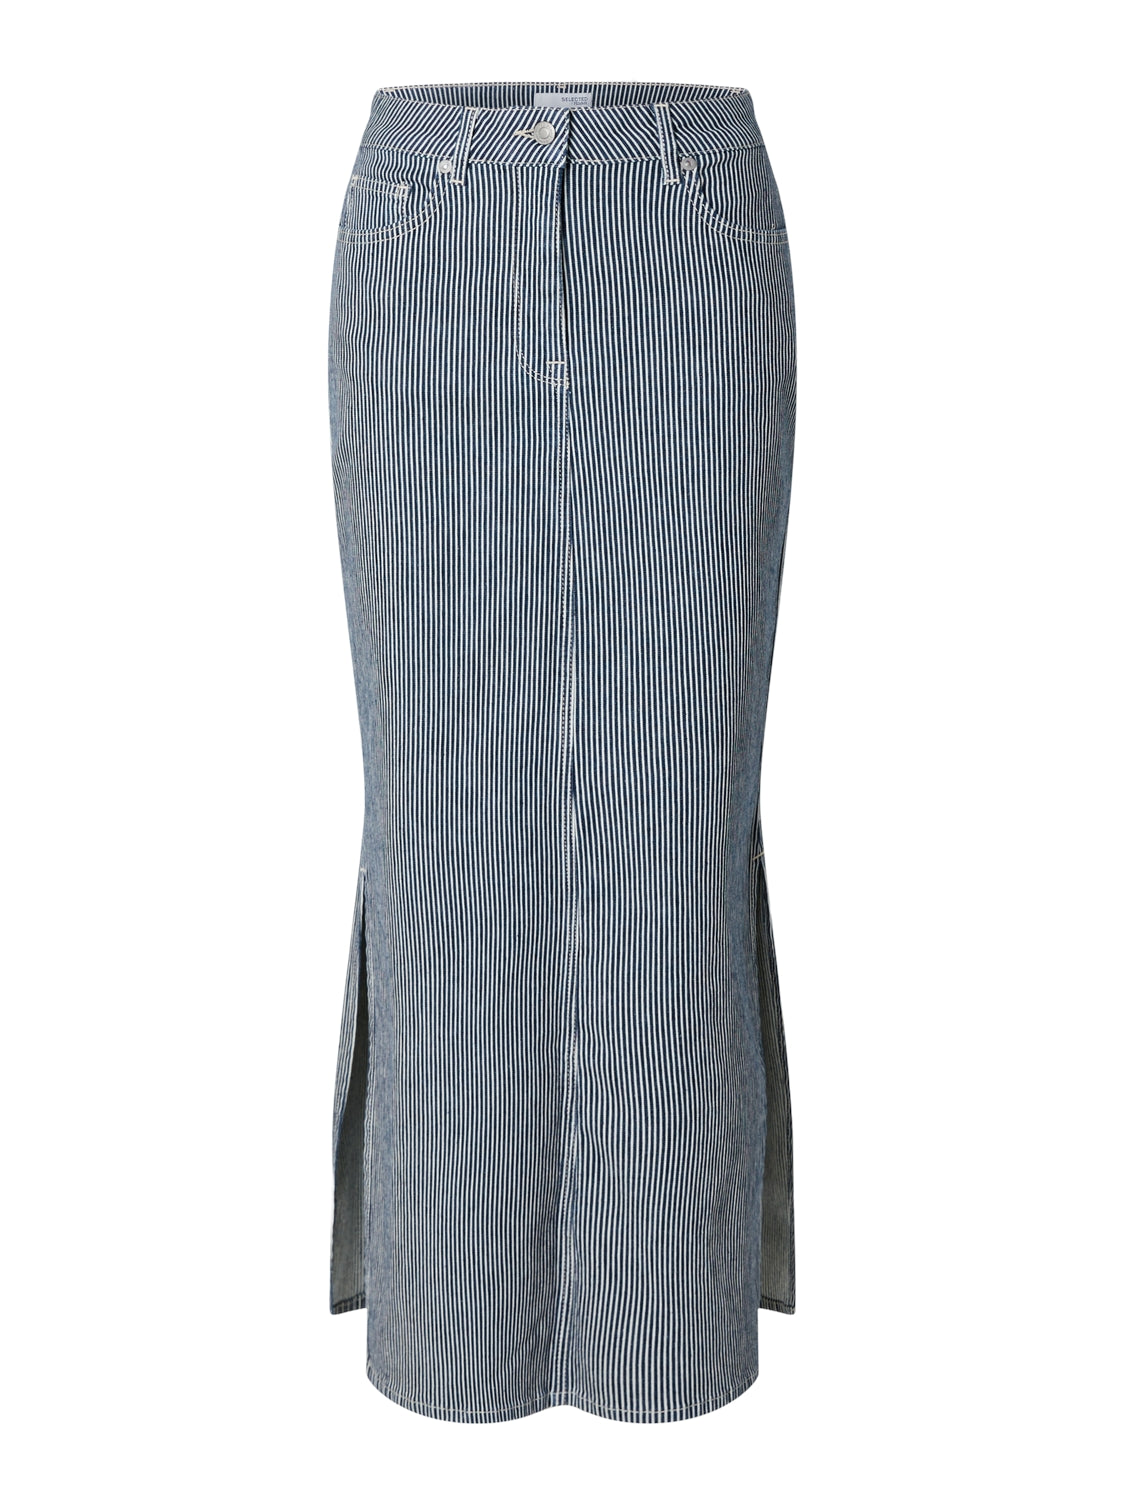 Selected Femme "Myra" Stripe Column Denim Skirt